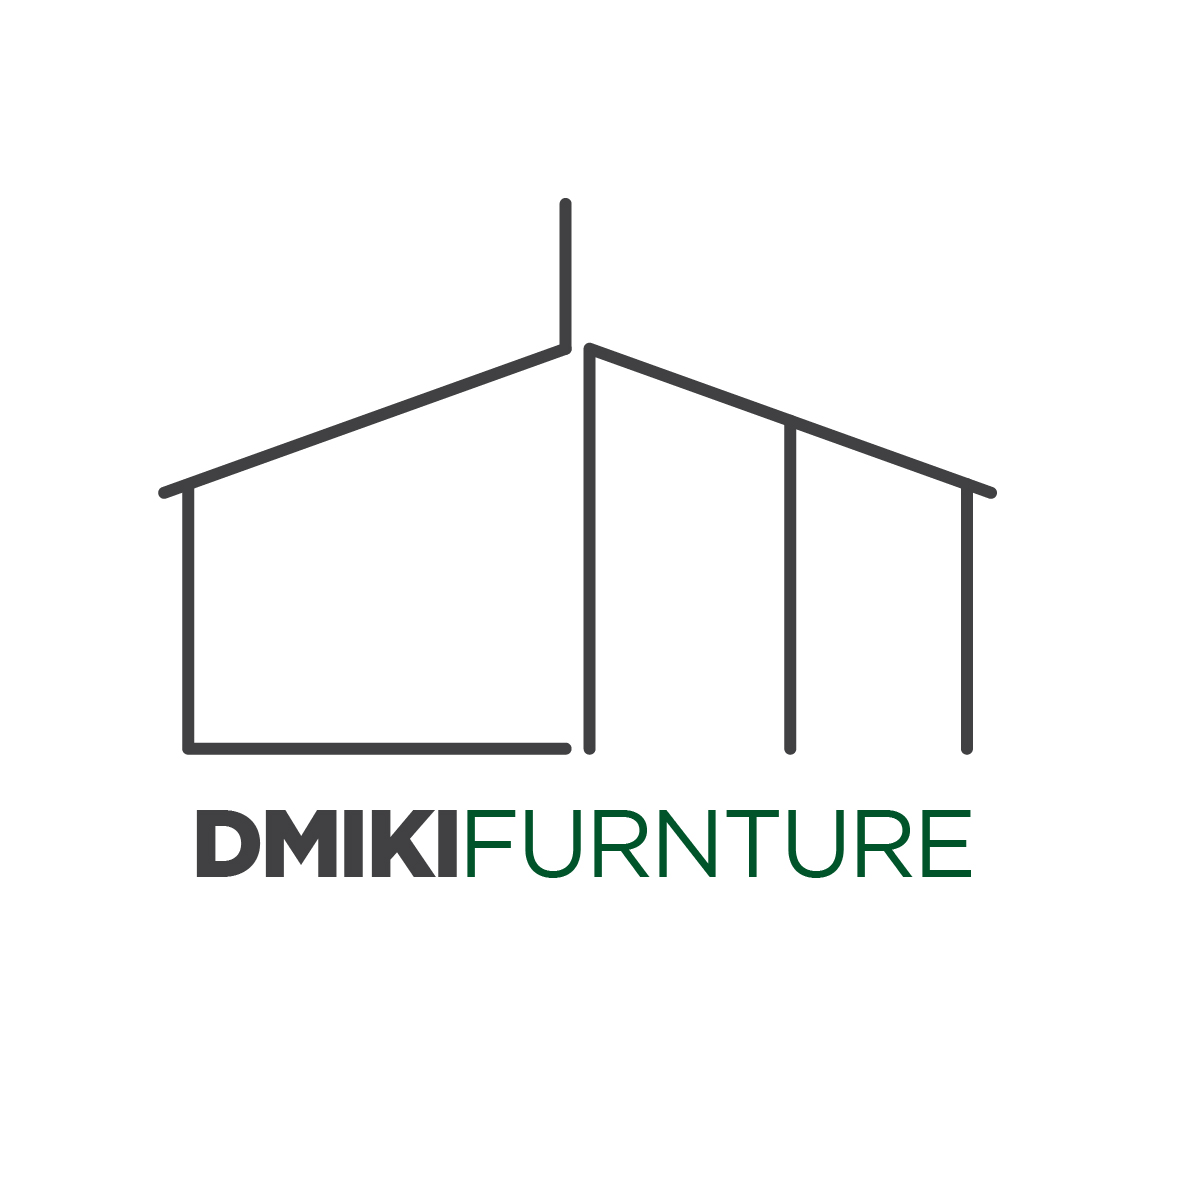 Dmiki furniture & craft